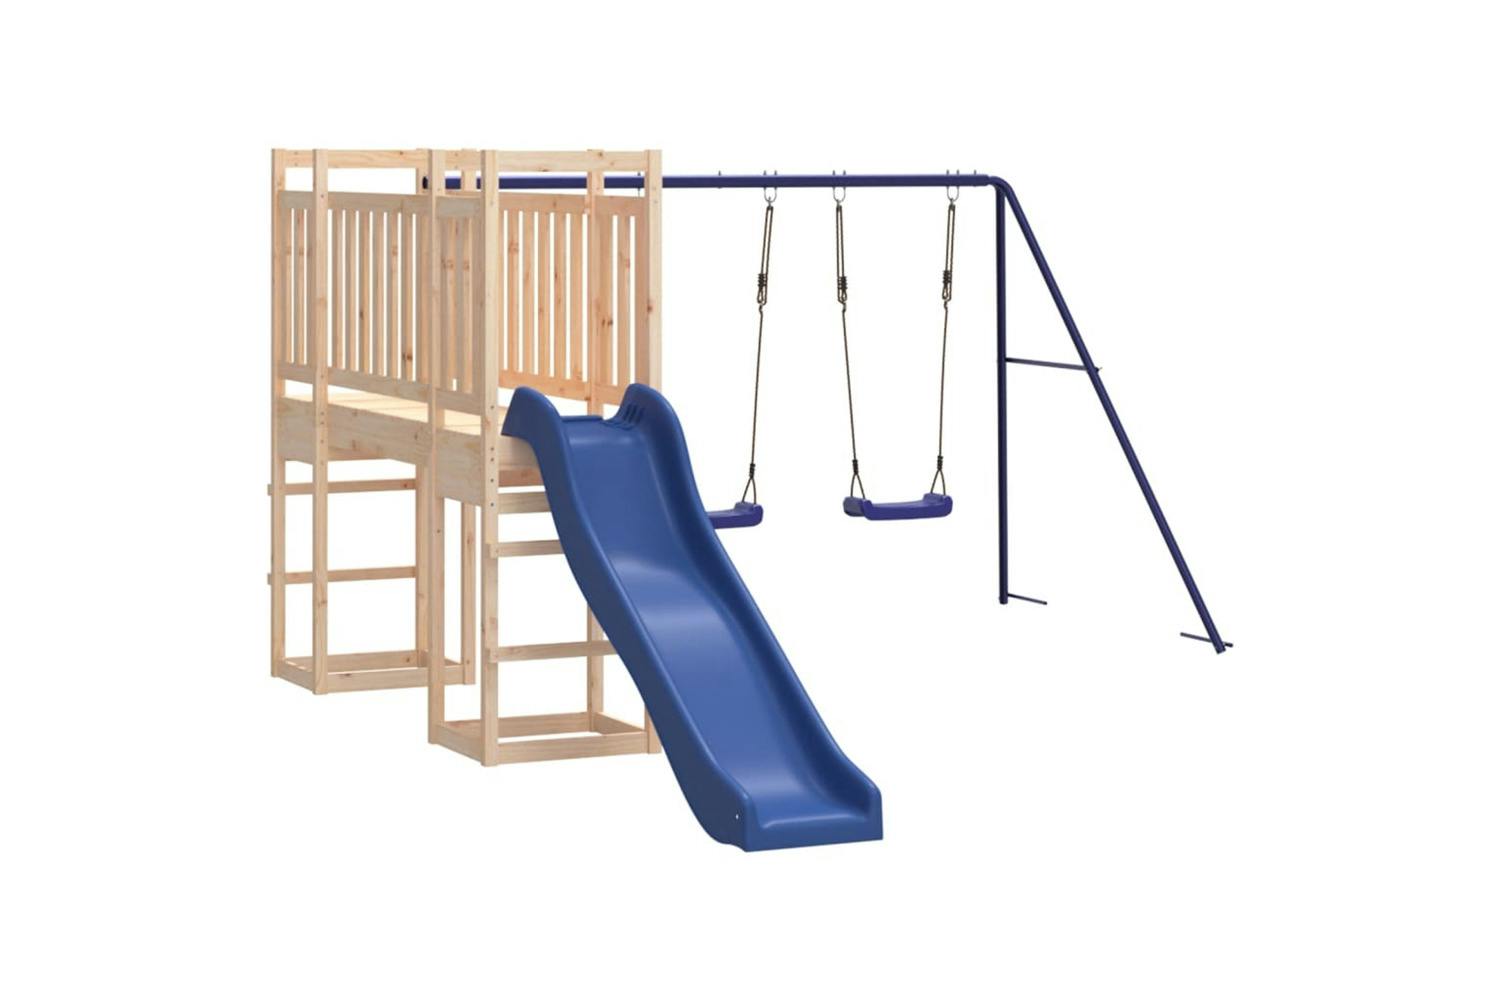 Vidaxl 3155960 Playhouse With Slide Swings Solid Wood Pine